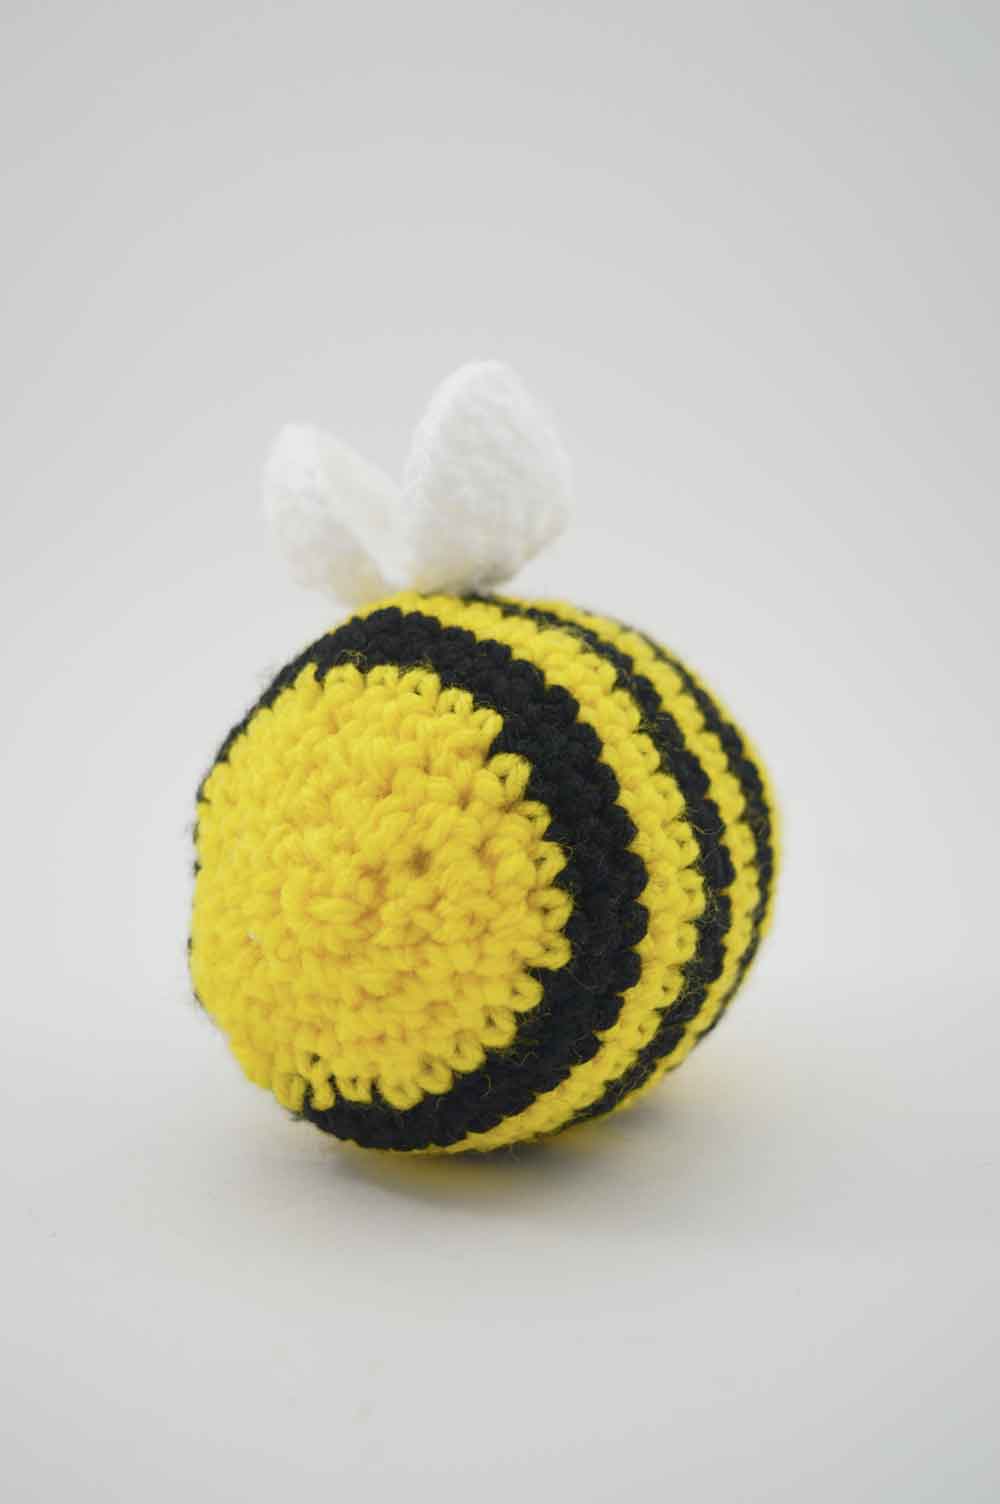 Handmade - Crochet Bee Plushie